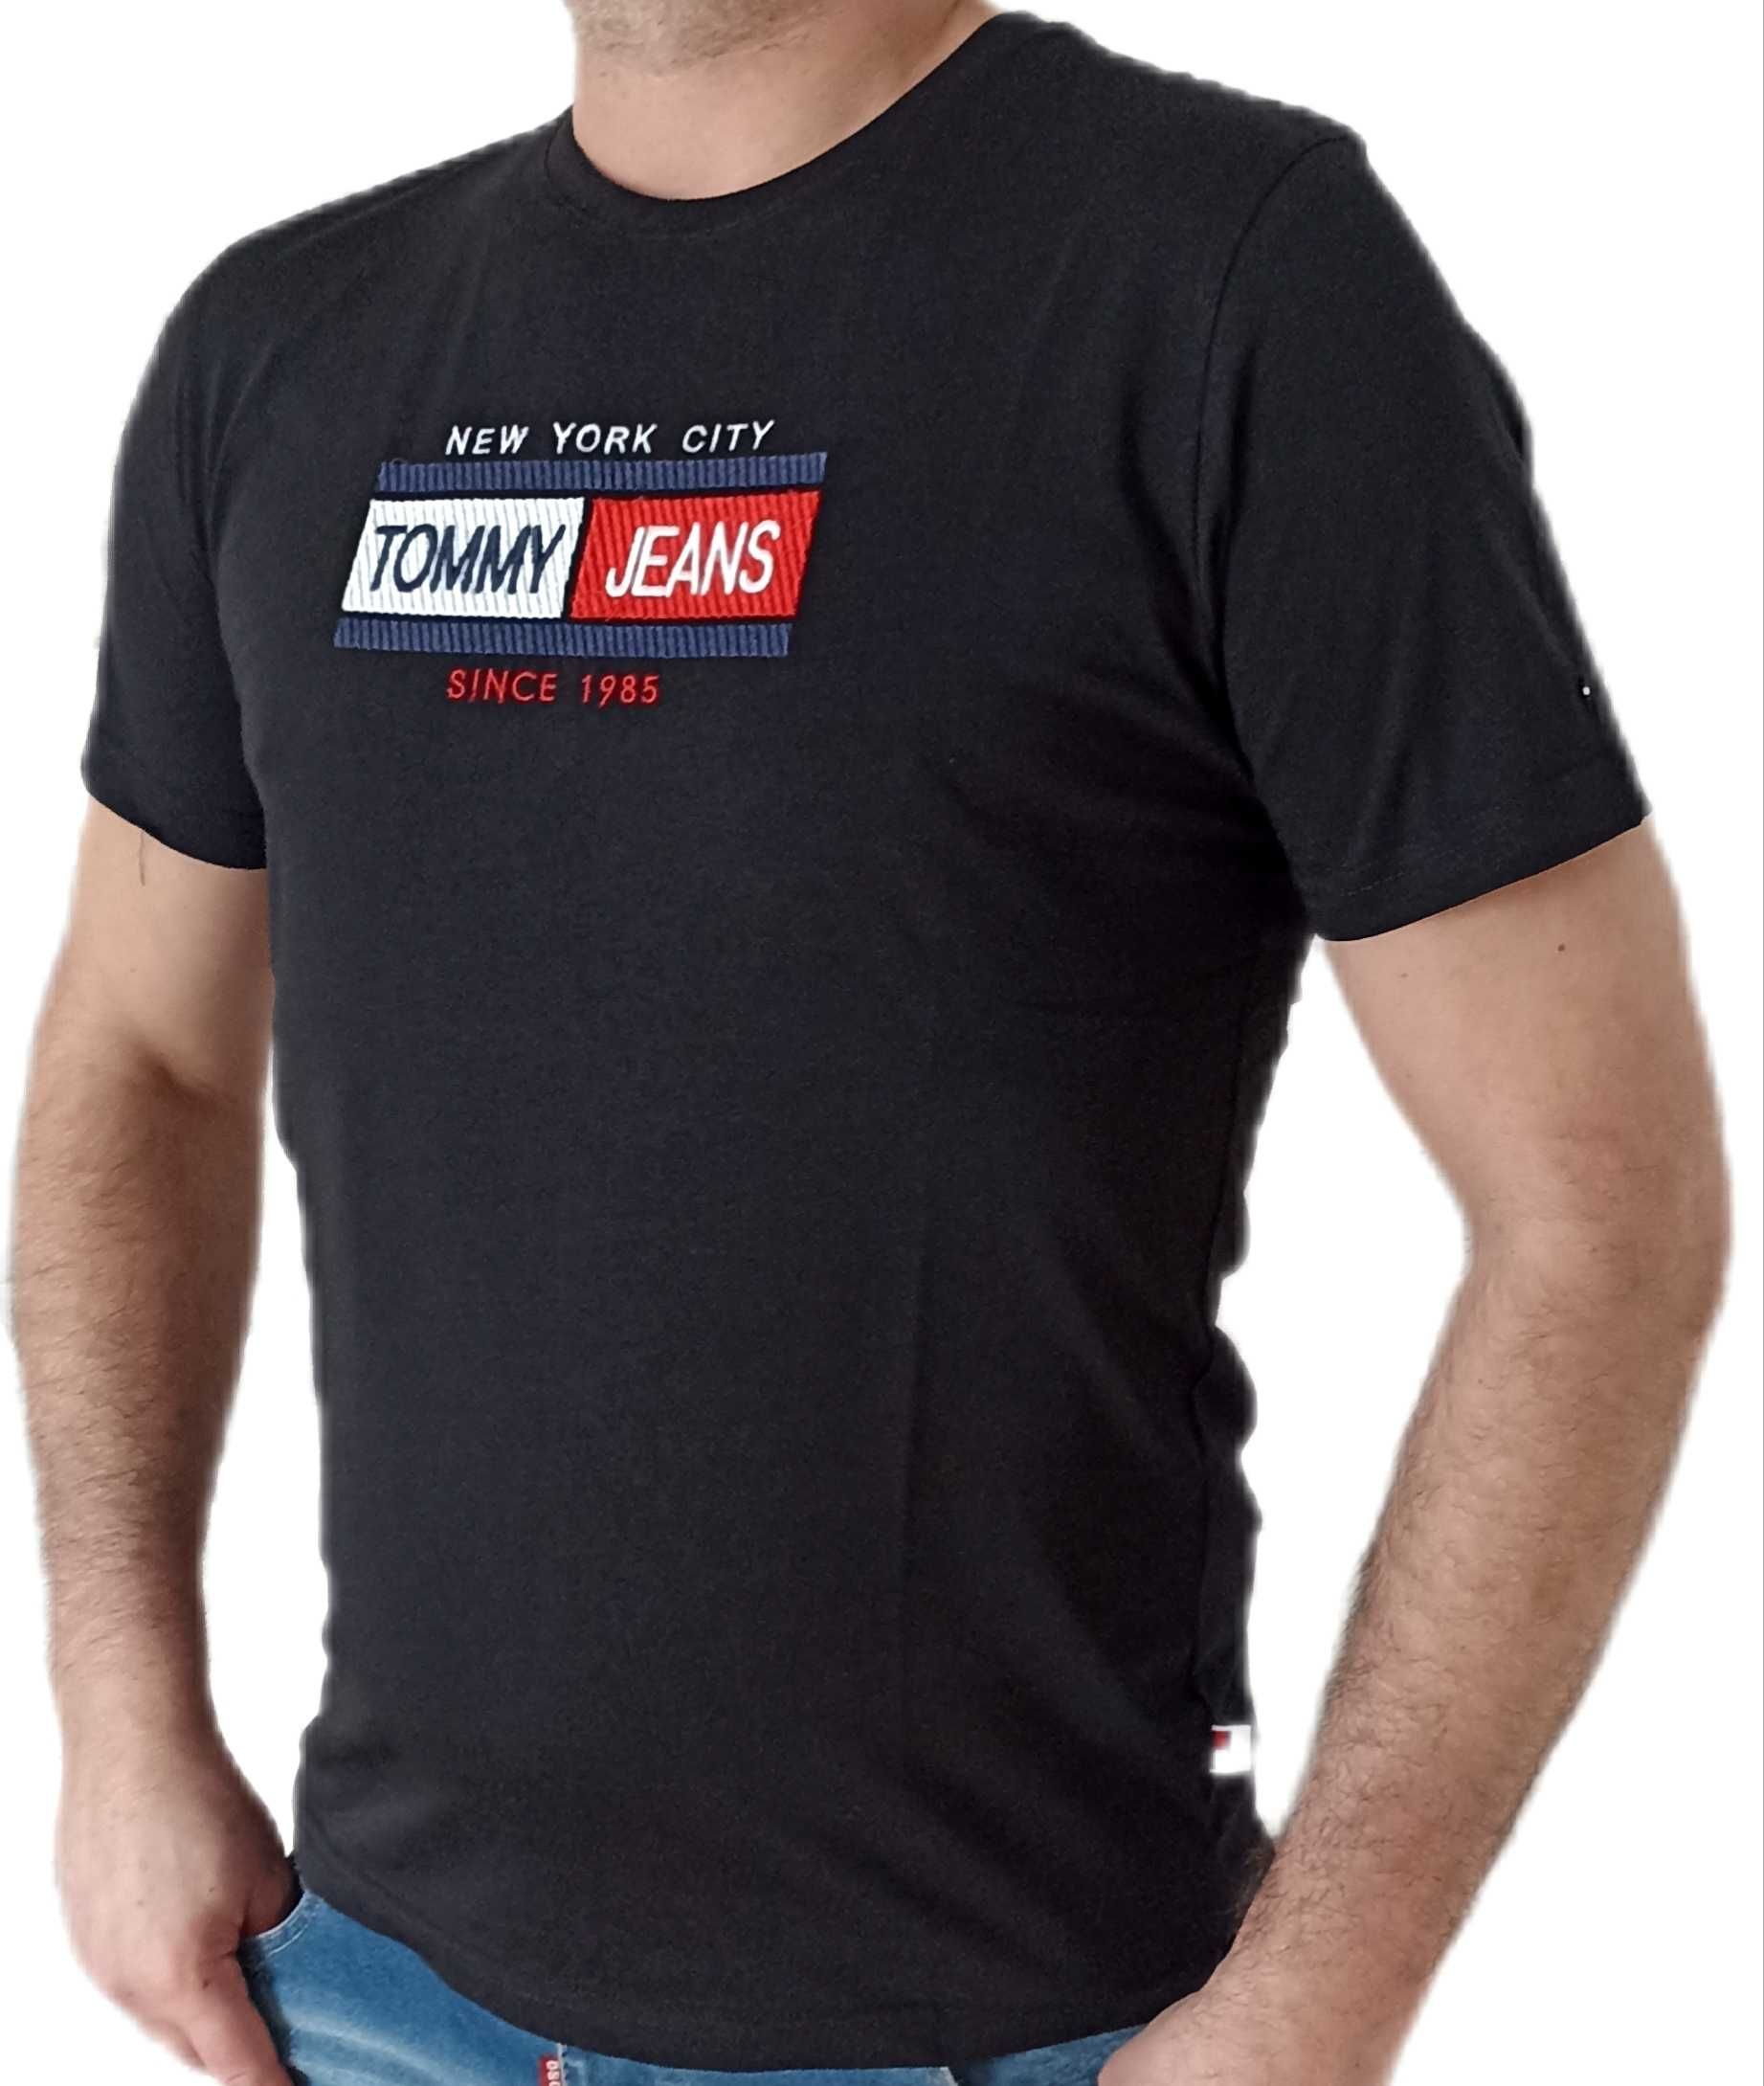 TOMMY HILFIGER T-shirt Koszulka Czarna r.M,L,XL,XXL